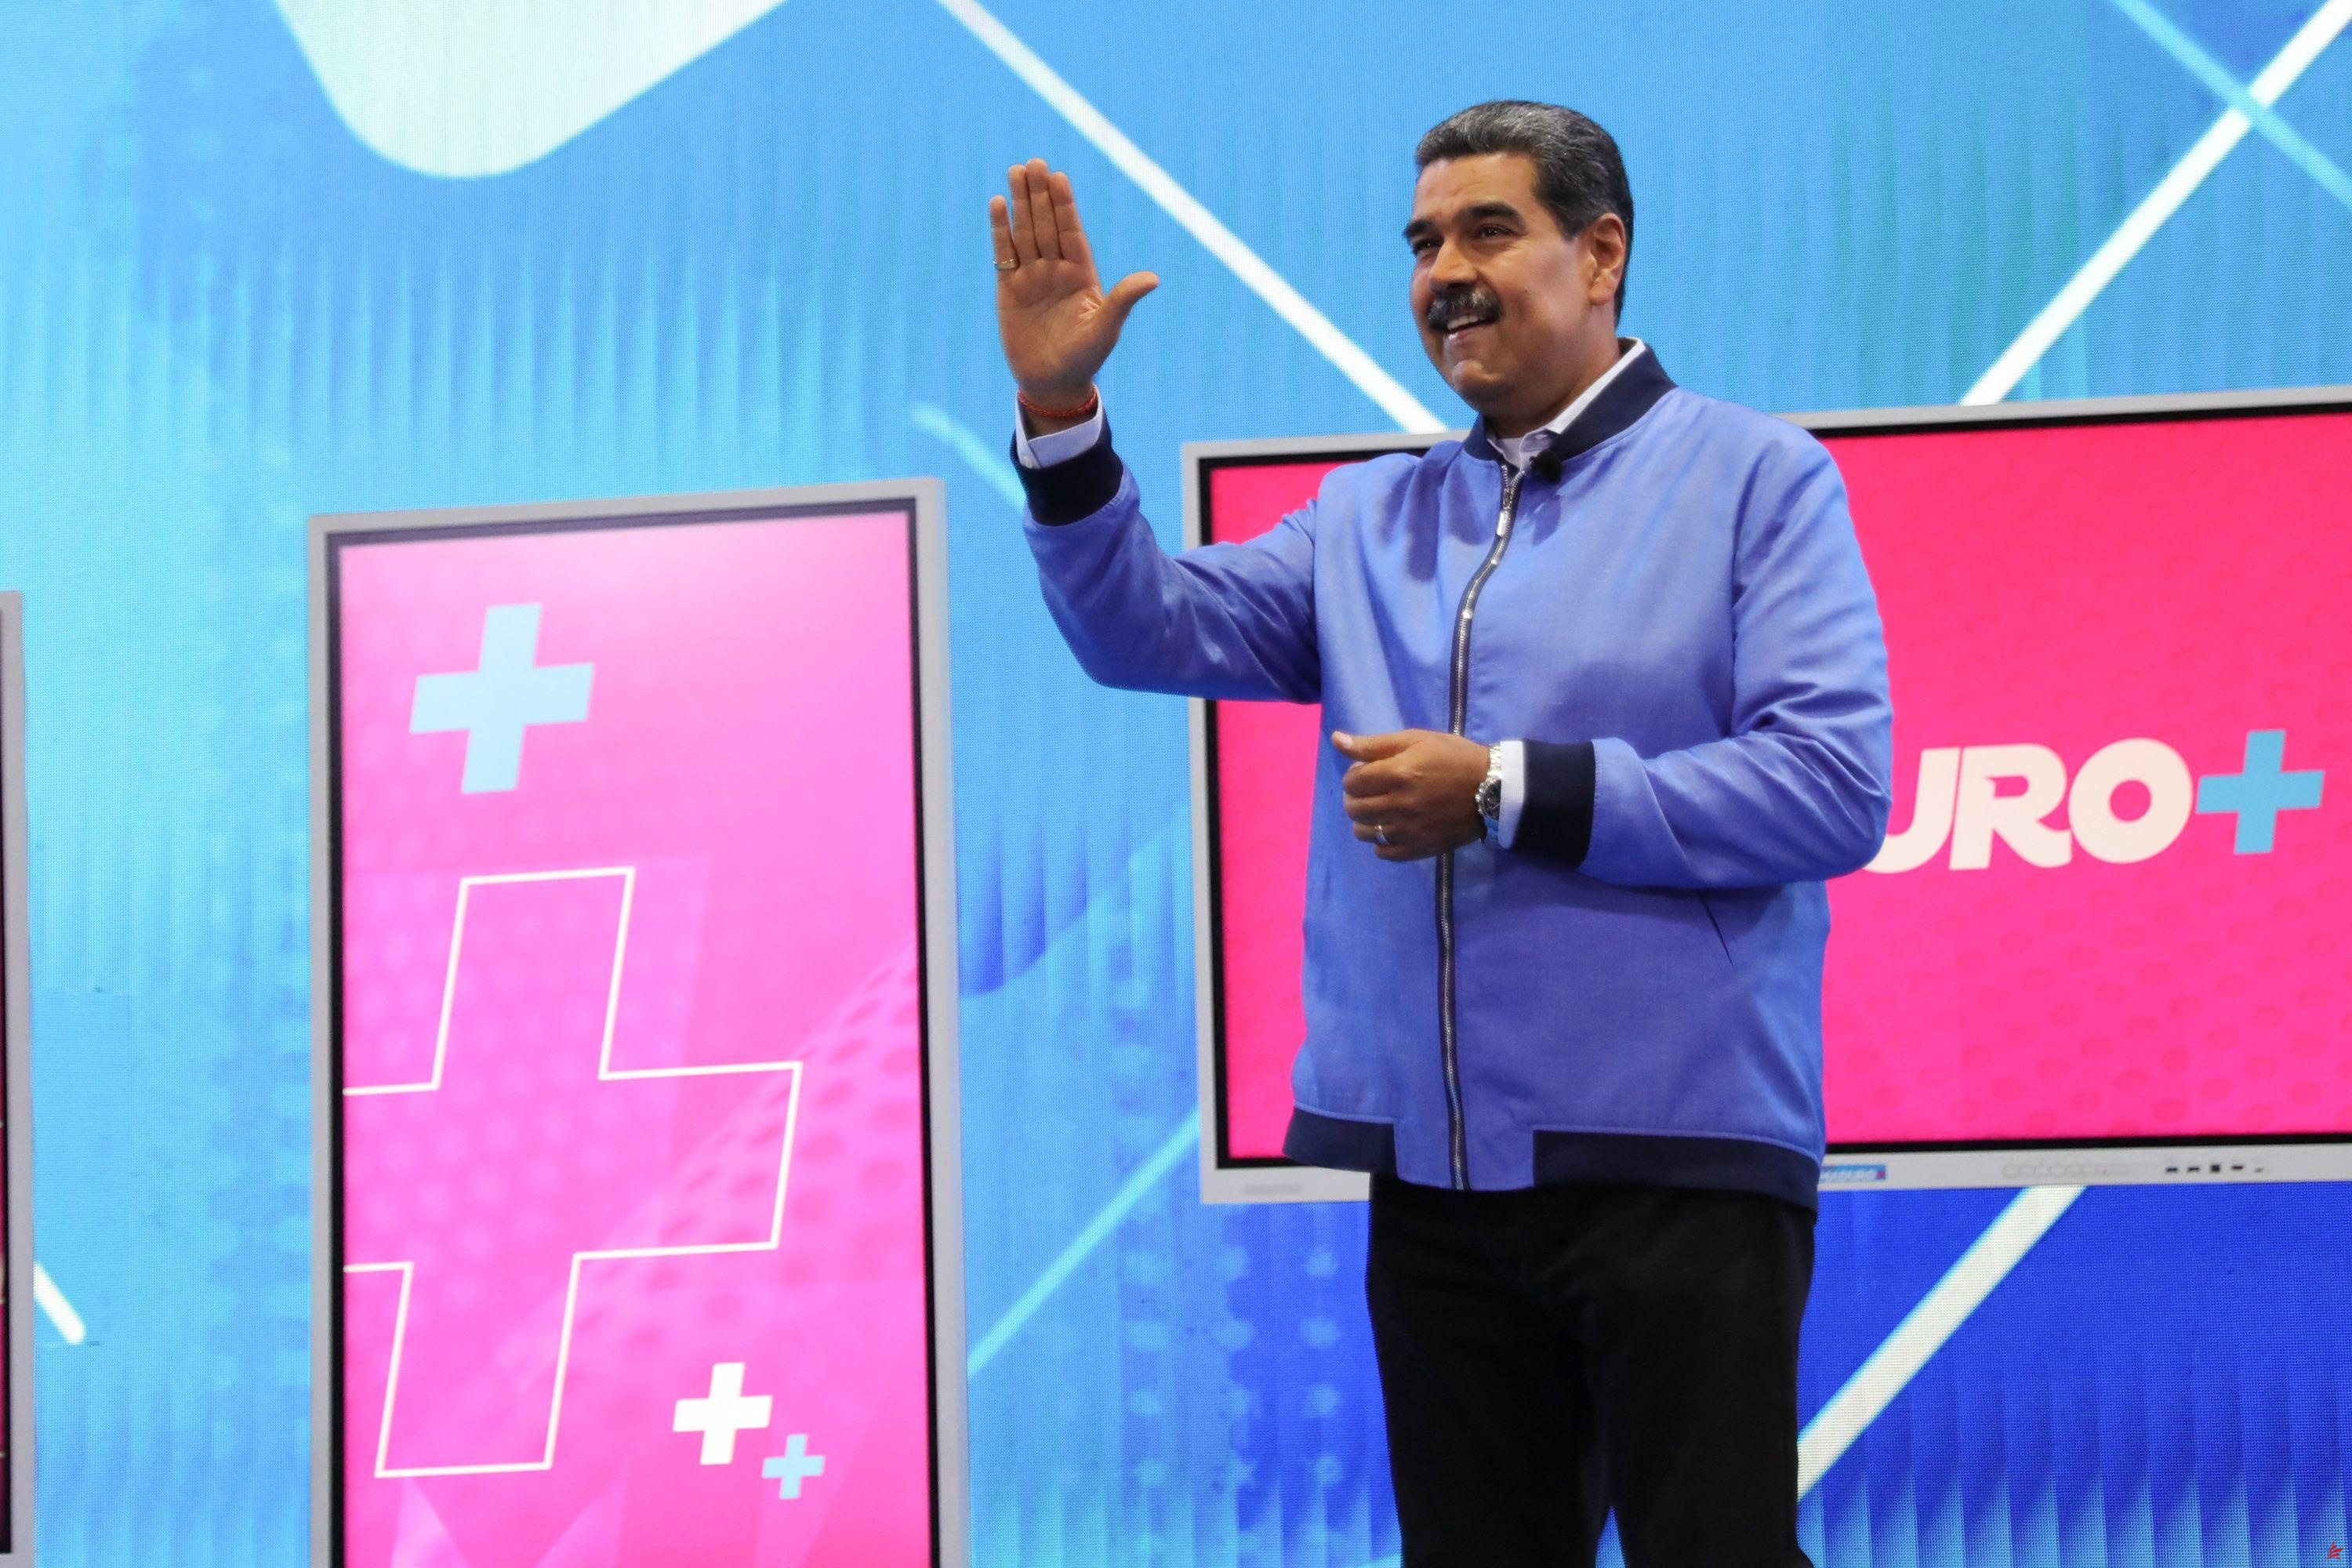 En Venezuela, Nicolás Maduro investido oficialmente por su partido para un tercer mandato presidencial